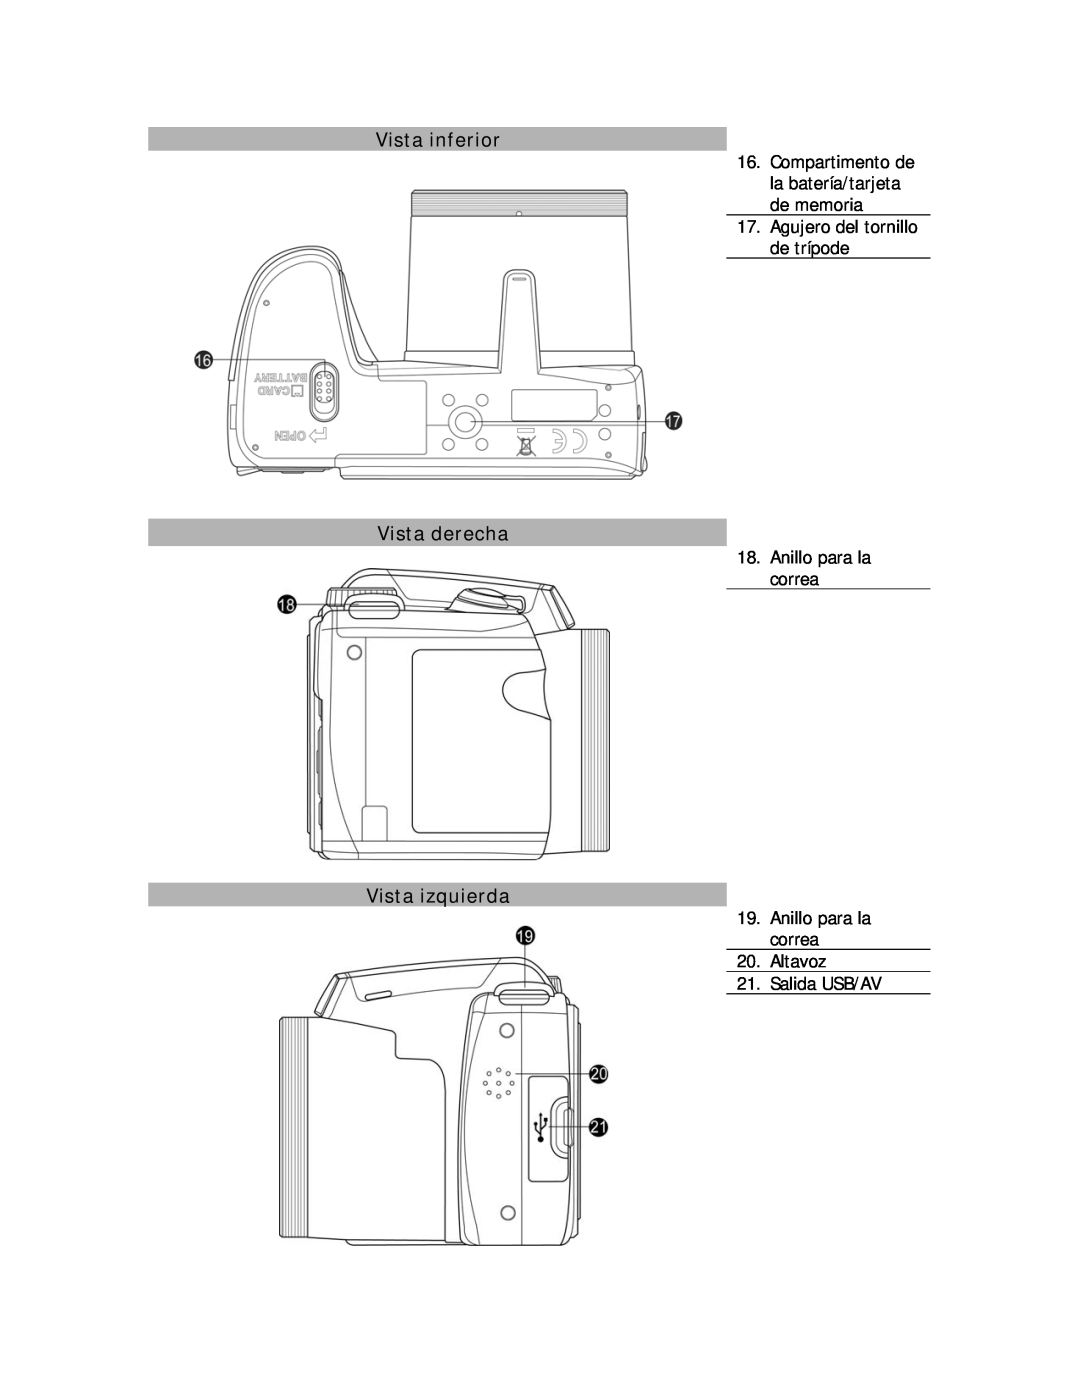 HP D-3000 manual Vista inferior, Vista derecha, Vista izquierda, Compartimento de la batería/tarjeta de memoria 